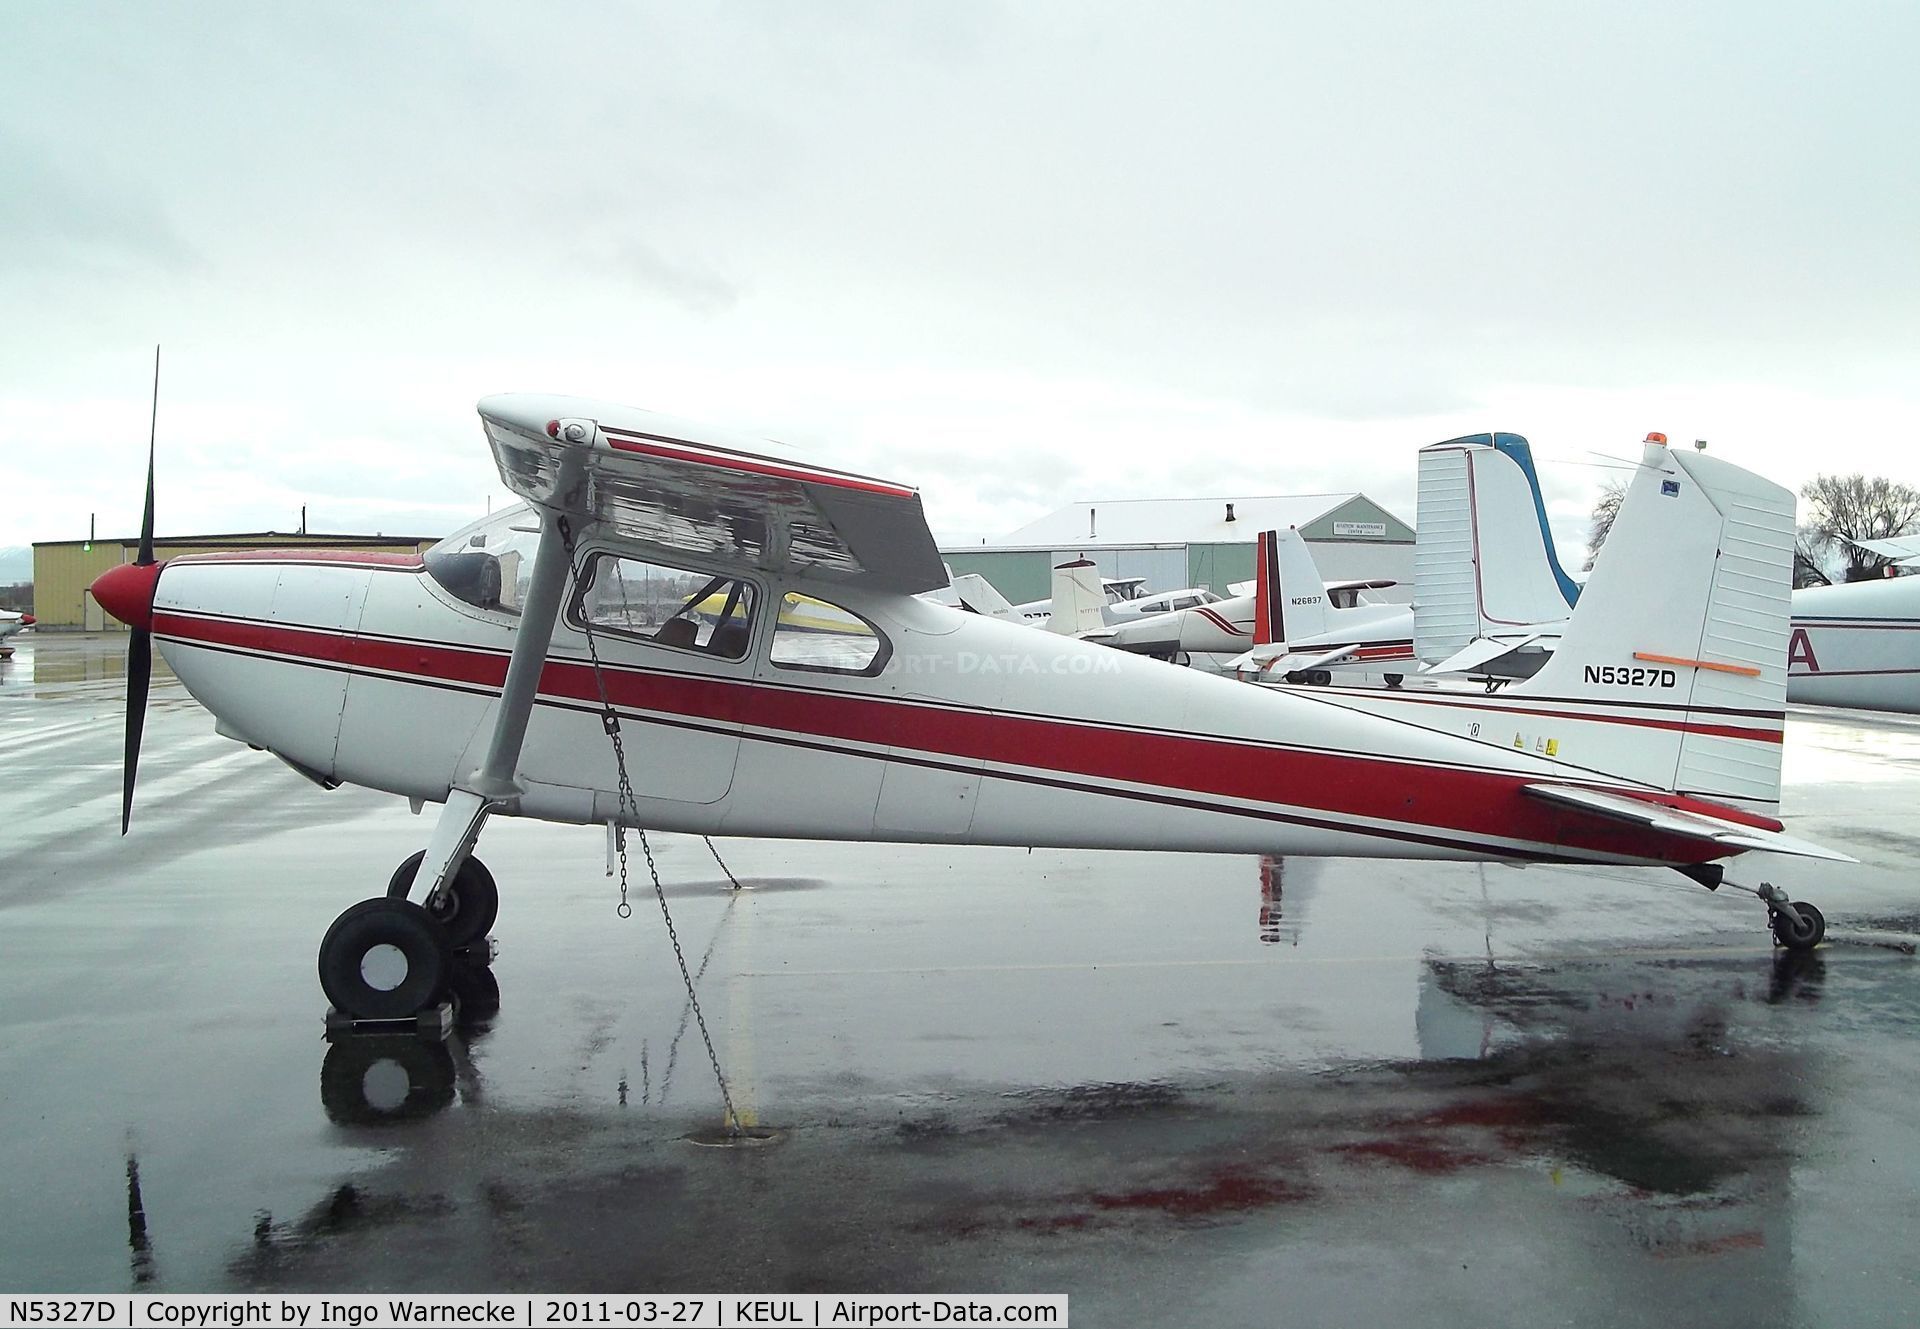 N5327D, 1958 Cessna 180A C/N 50225, Cessna 180A Skywagon at Caldwell Industrial airport, Caldwell ID